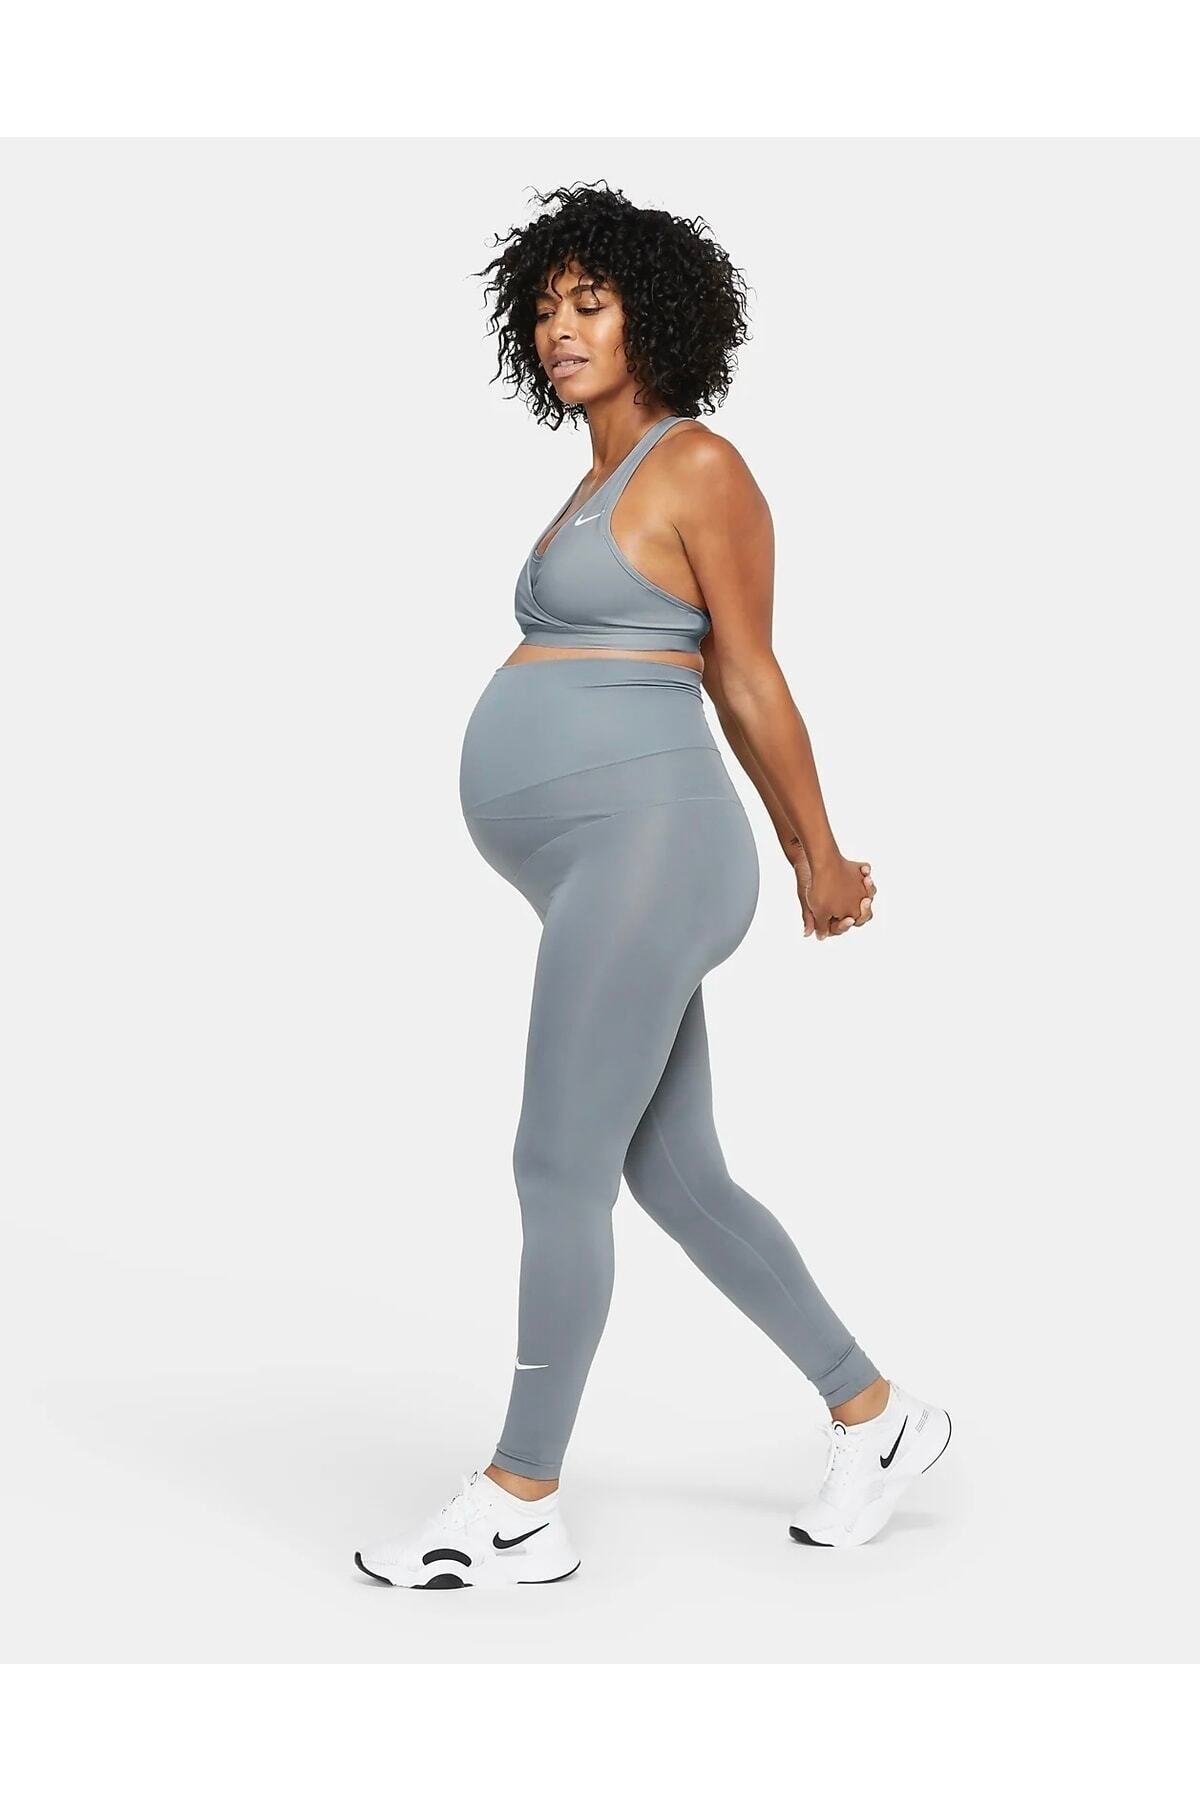 Nike Dri-fit Swoosh (m) Medium Support Padded Women's Sports Bra  (pregnancy) Cq9289-084